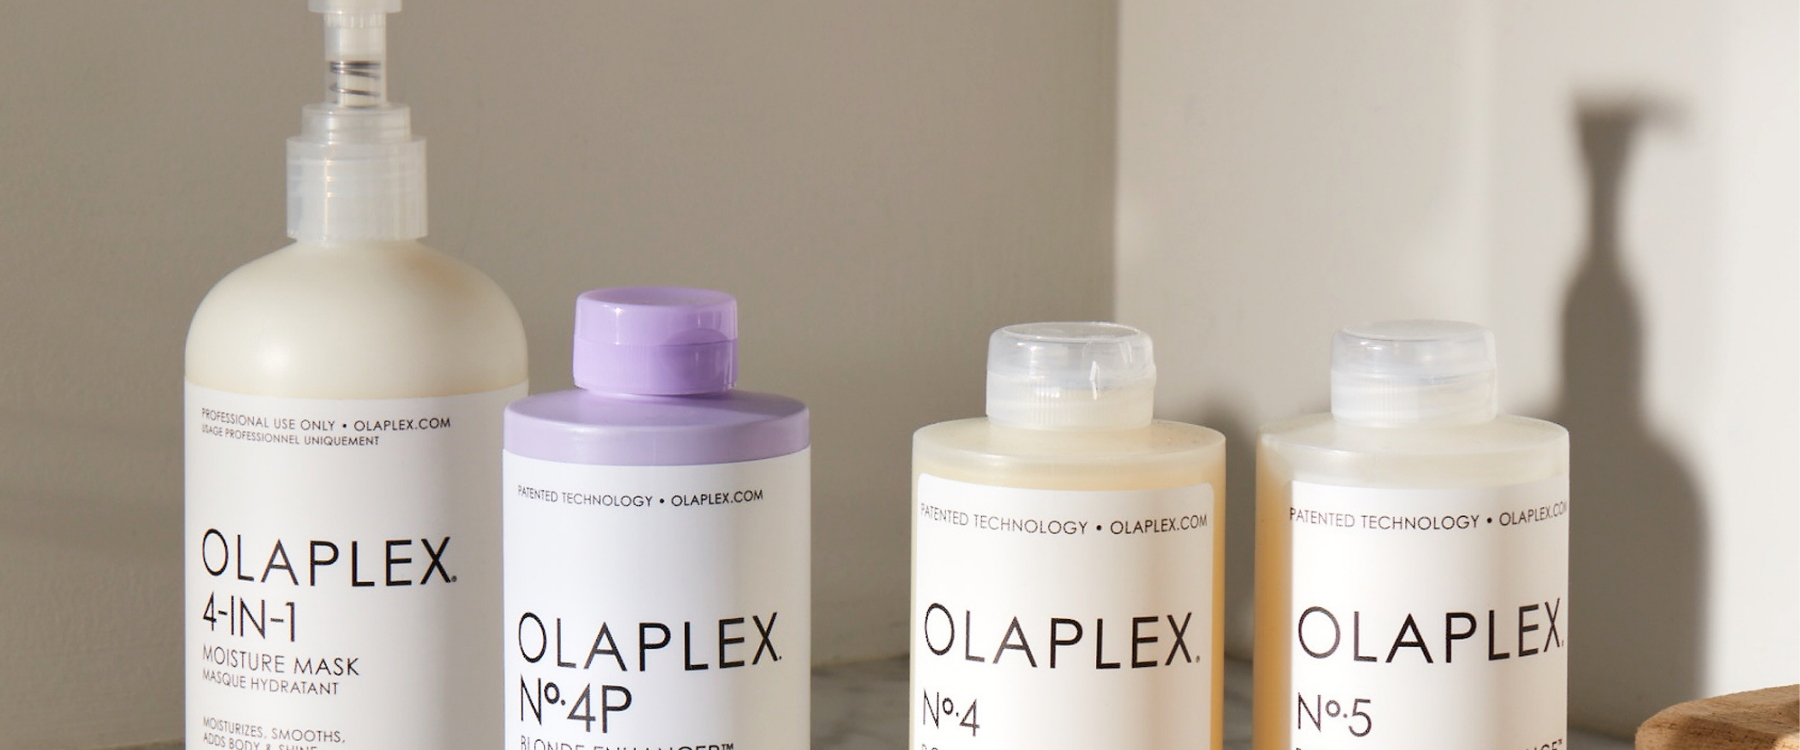 olaplex set of 4 haircare products: Olaplex 4 in 1, olaplex 4P, Olaplex 4 and olaplex 5